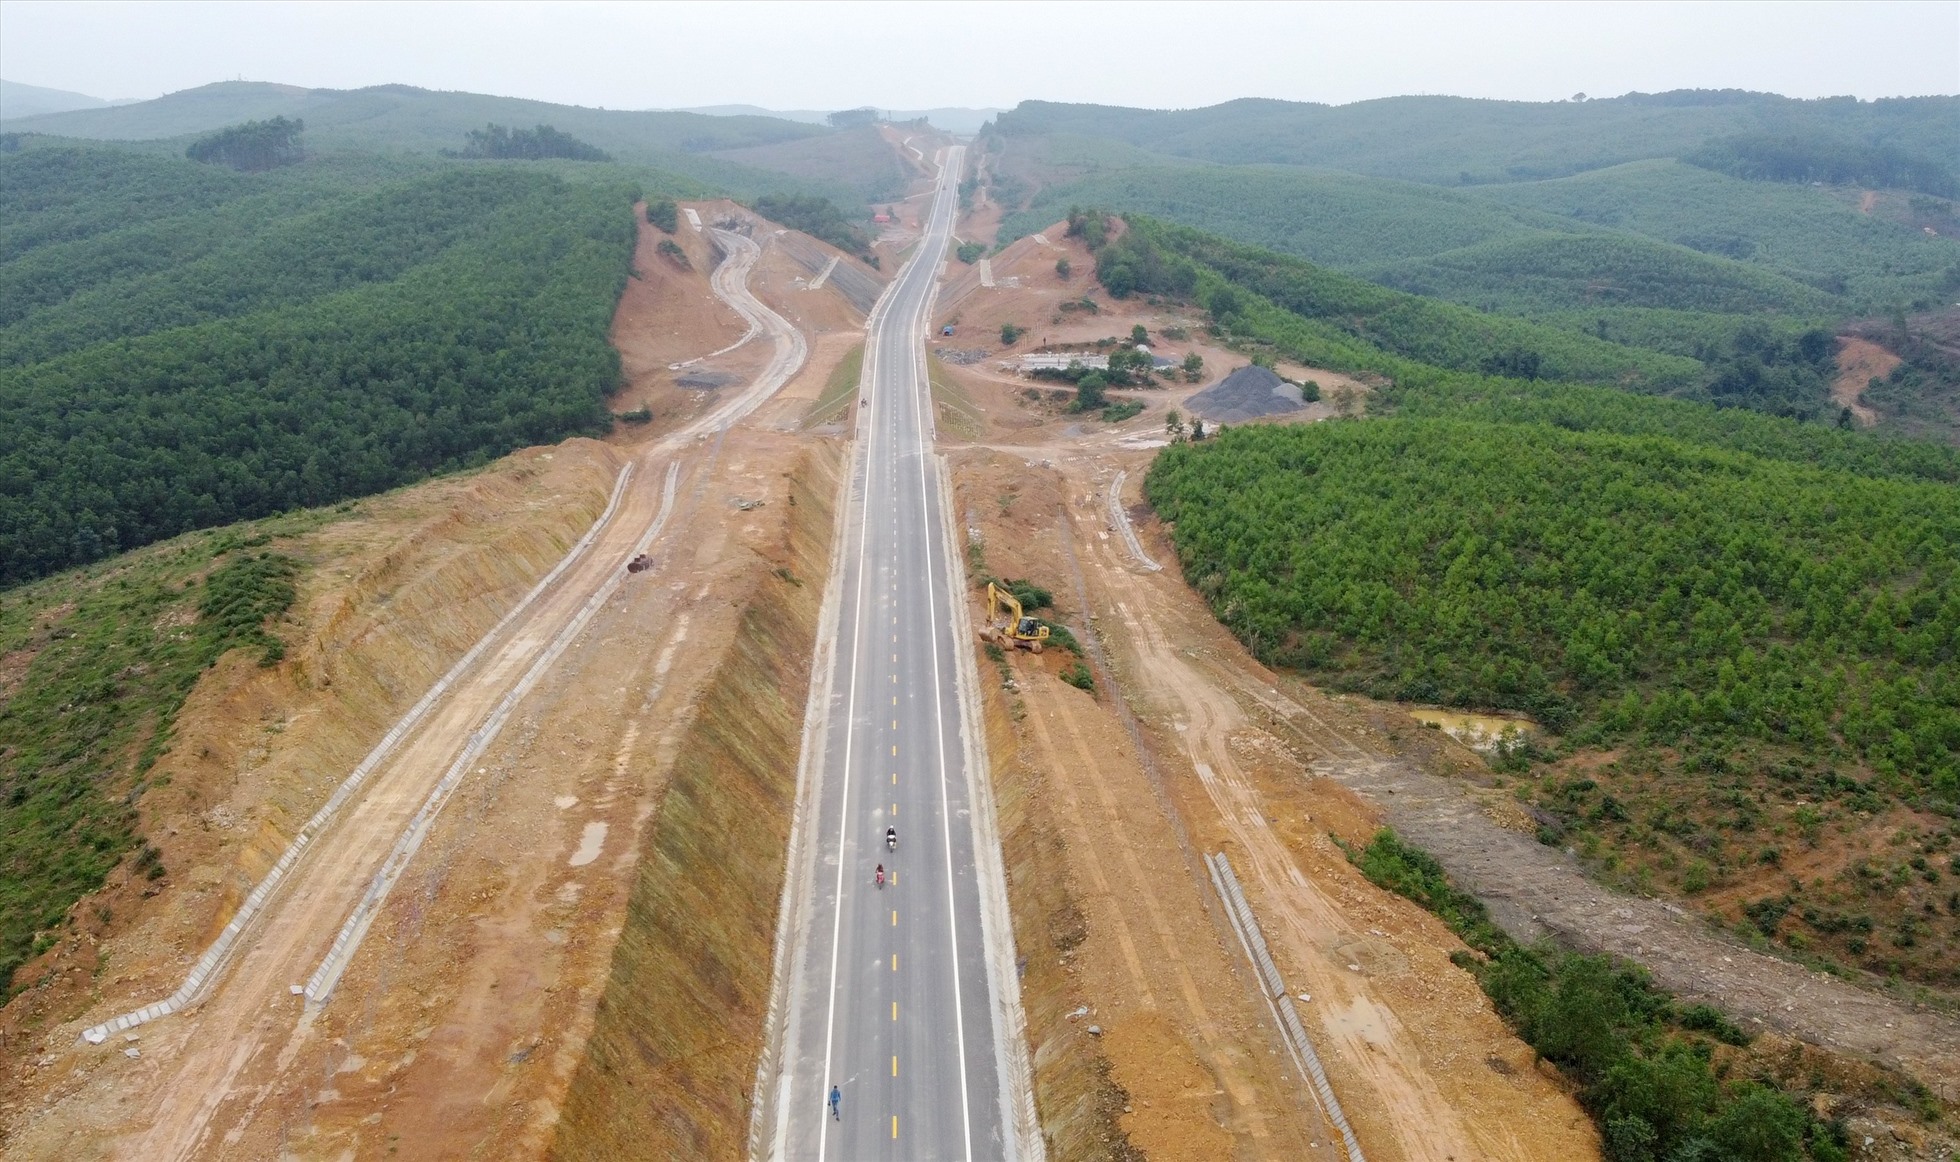 Dự án cao tốc Cam Lộ - La Sơn khởi công ngày 16.9.2019, có tổng vốn đầu tư hơn 7.600 tỉ đồng, gồm 11 gói thầu xây lắp. Công trình là dự án thành phần của cao tốc Bắc Nam phía Đông giai đoạn 2017-2020.